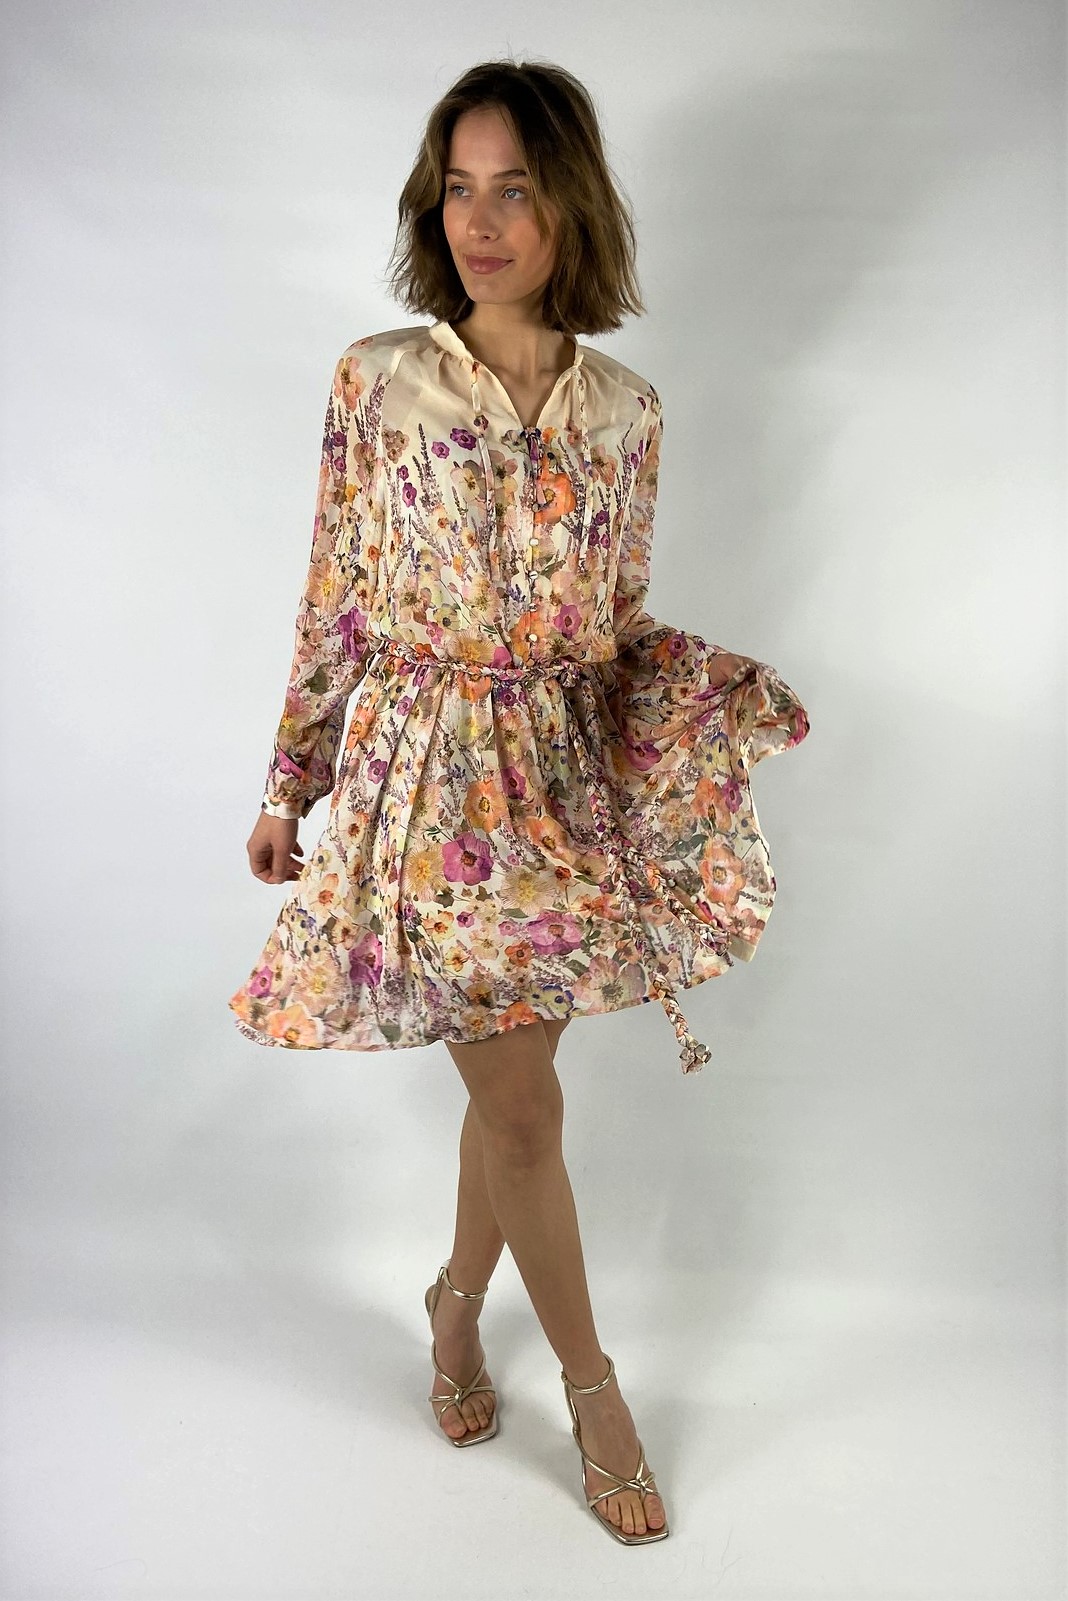 Kleed V riempje floral print in de kleur blush floral van het merk Dreamcatcher